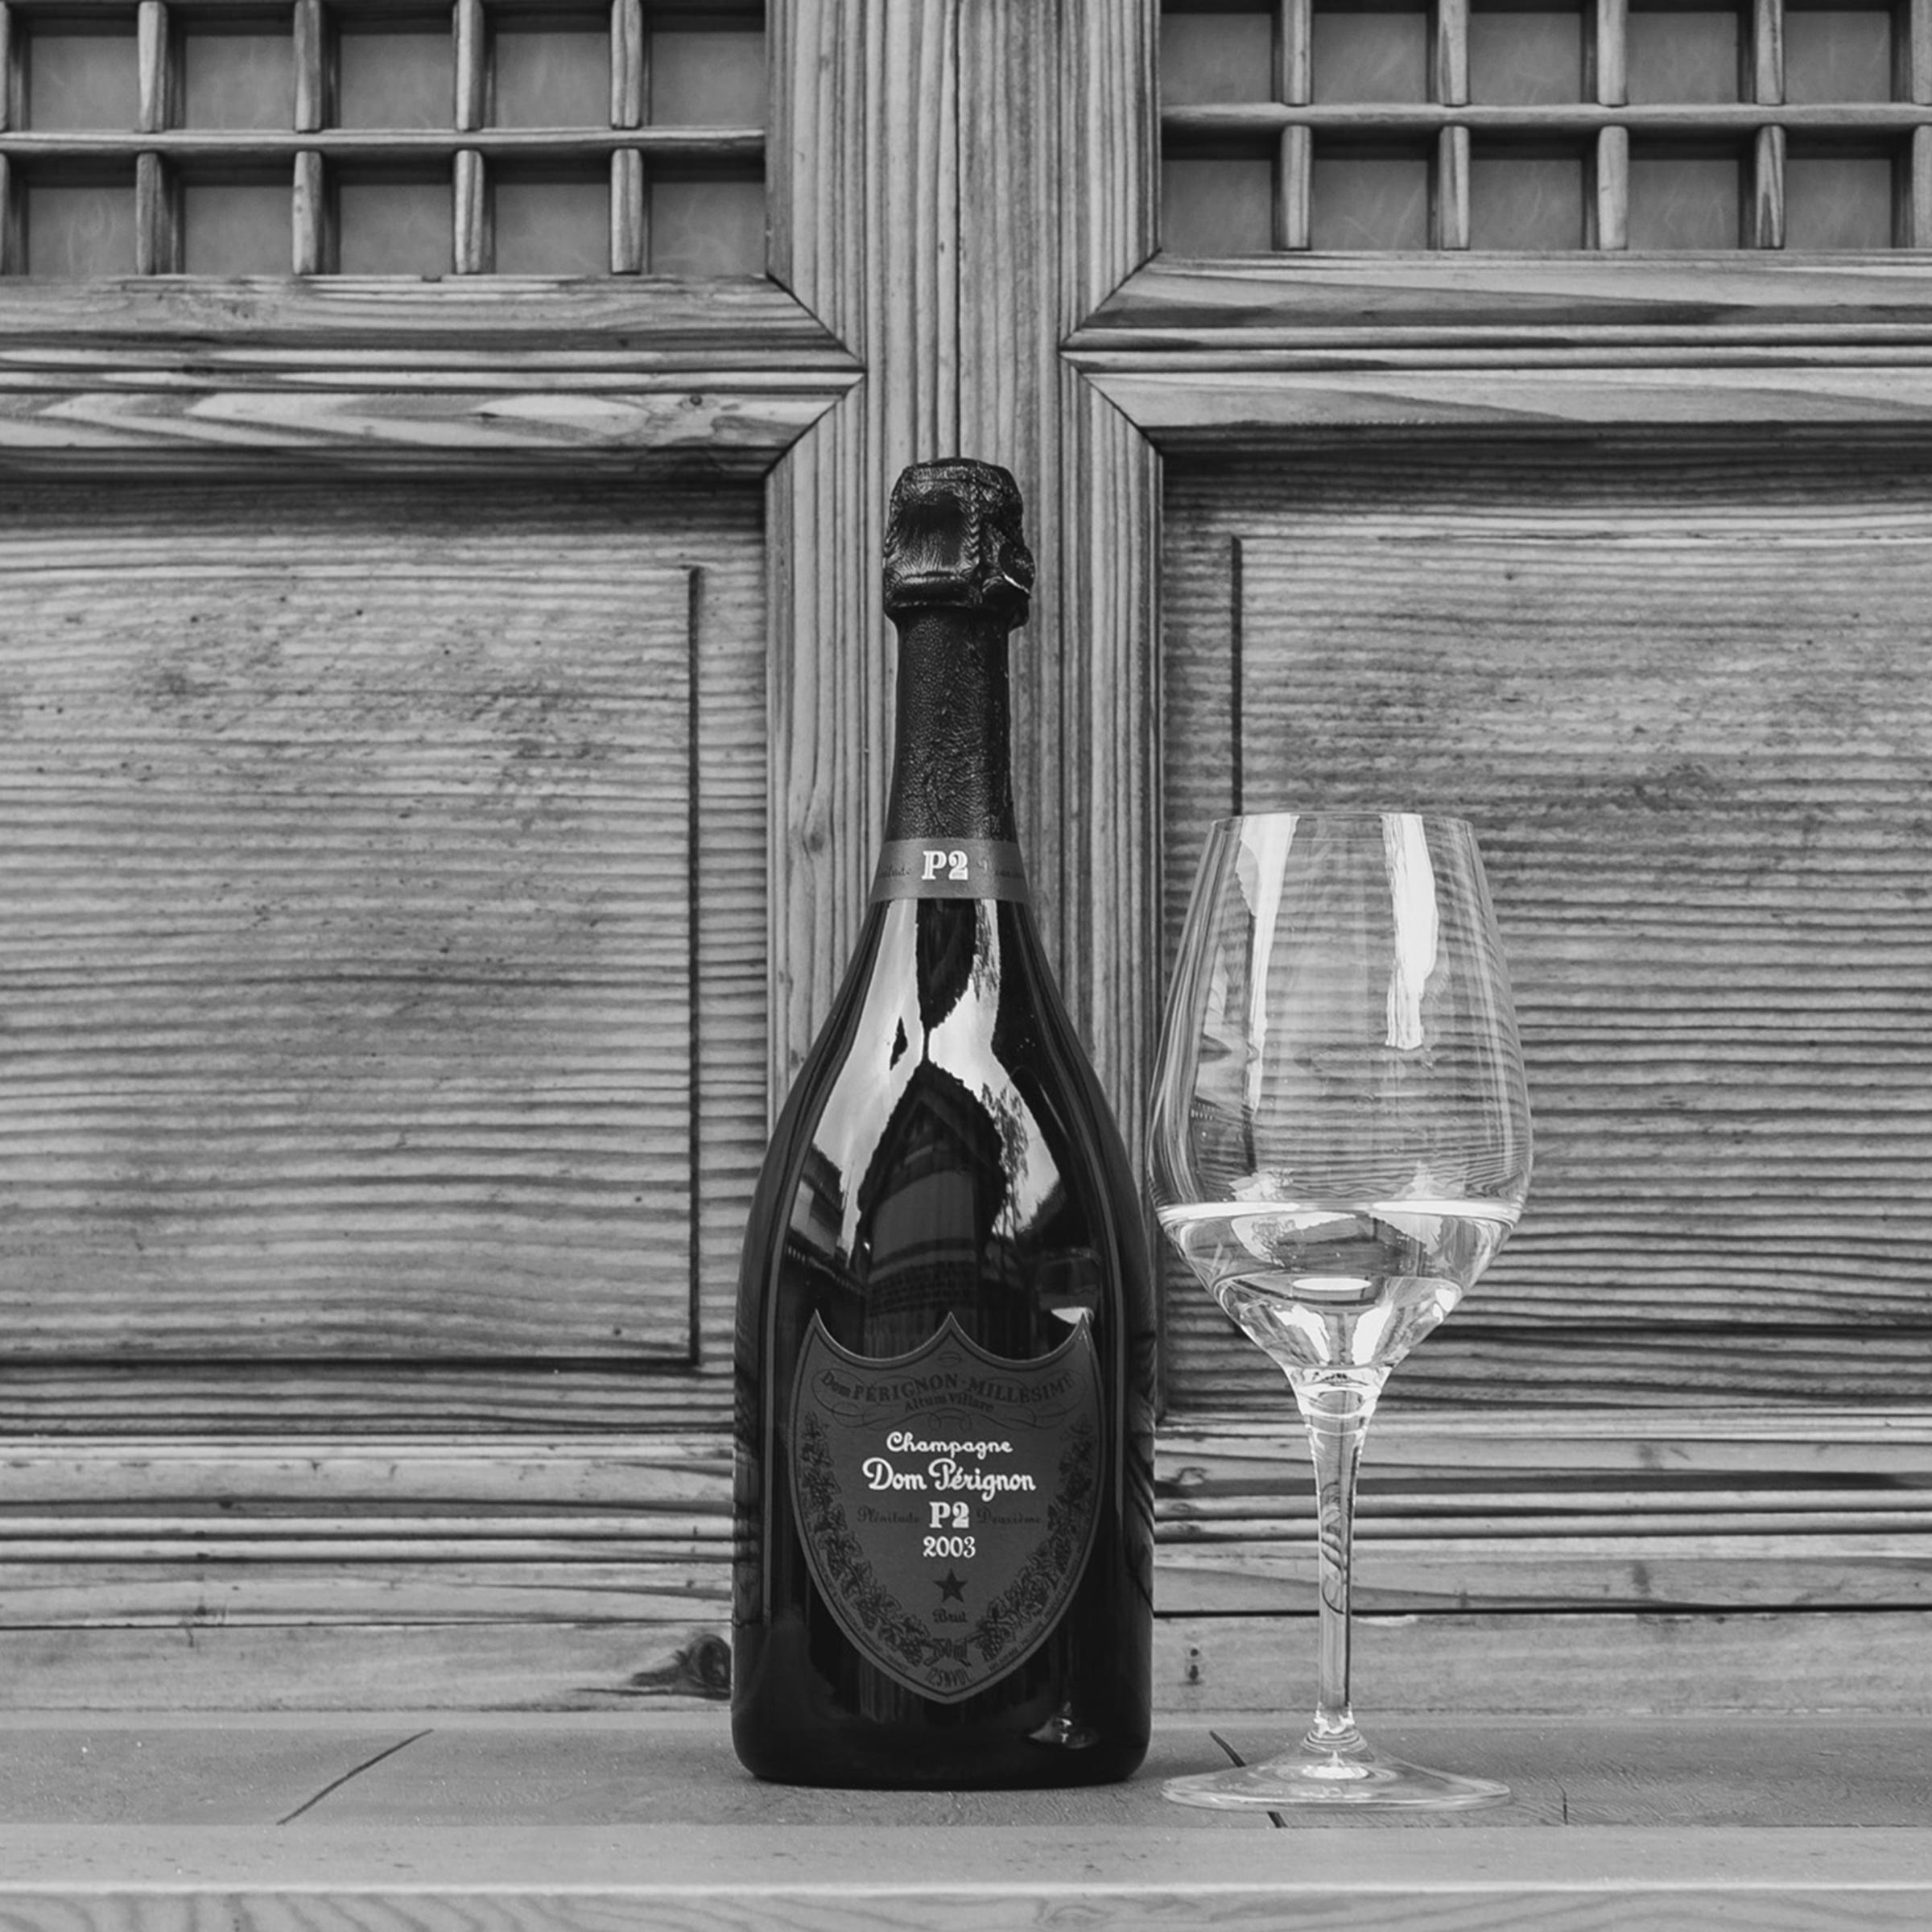 Dom Perignon Champagne Brut Champagne Blend 2003 750ml - Champagne